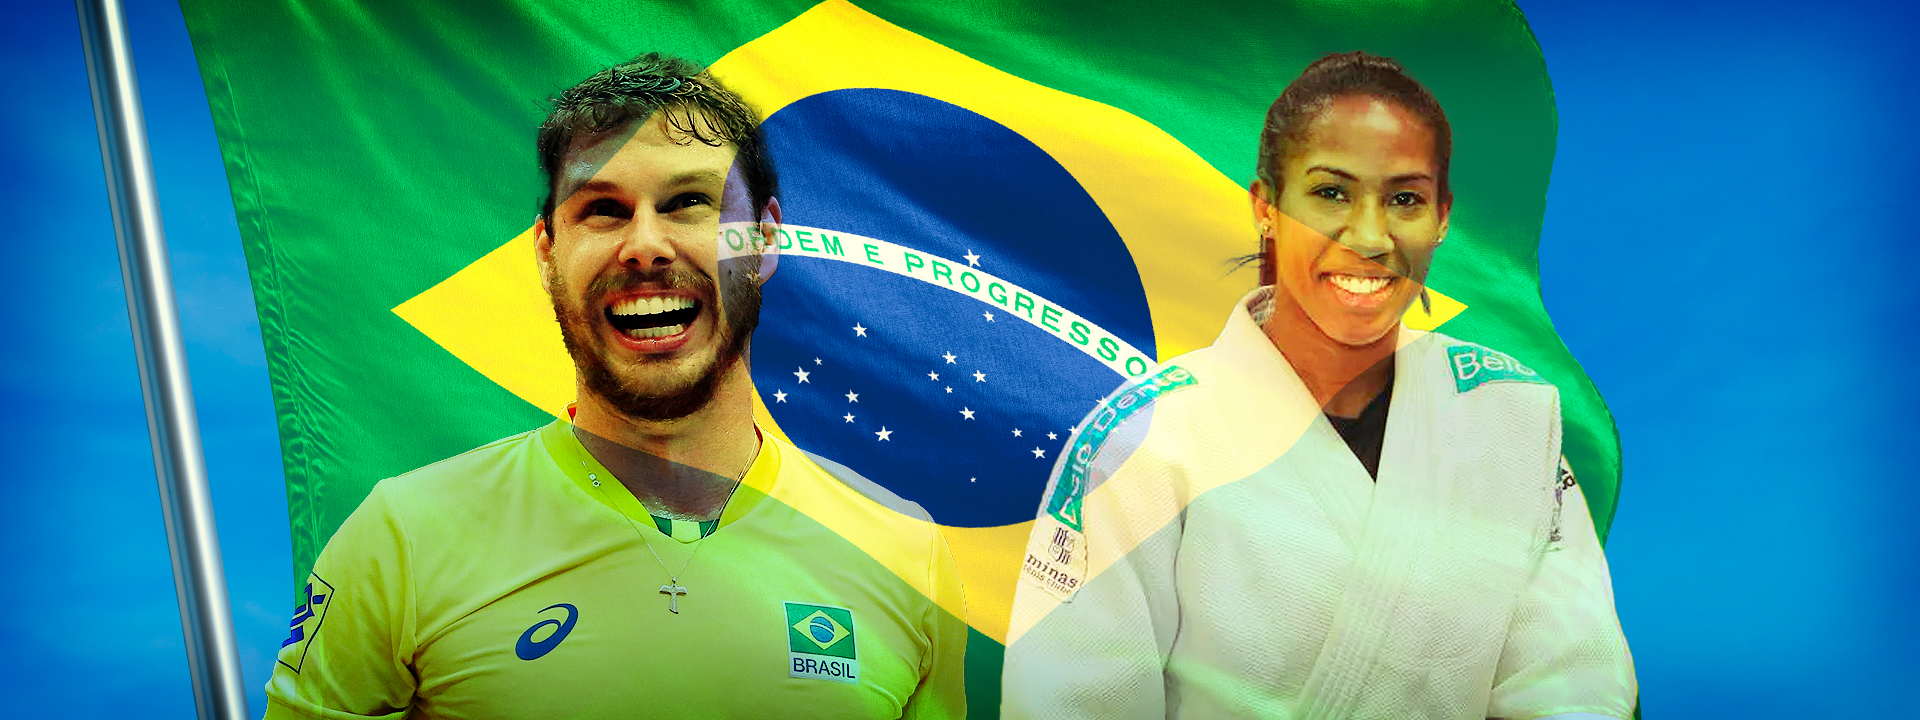 CBC “Rumo a Tóquio”: Ketleyn Quadros, judoca da Sociedade de Ginástica  Porto Alegre – Sogipa-RS e Bruninho, levantador do Vôlei Taubaté-SP serão  os porta-bandeiras brasileiros nos Jogos Olímpicos de Tóquio